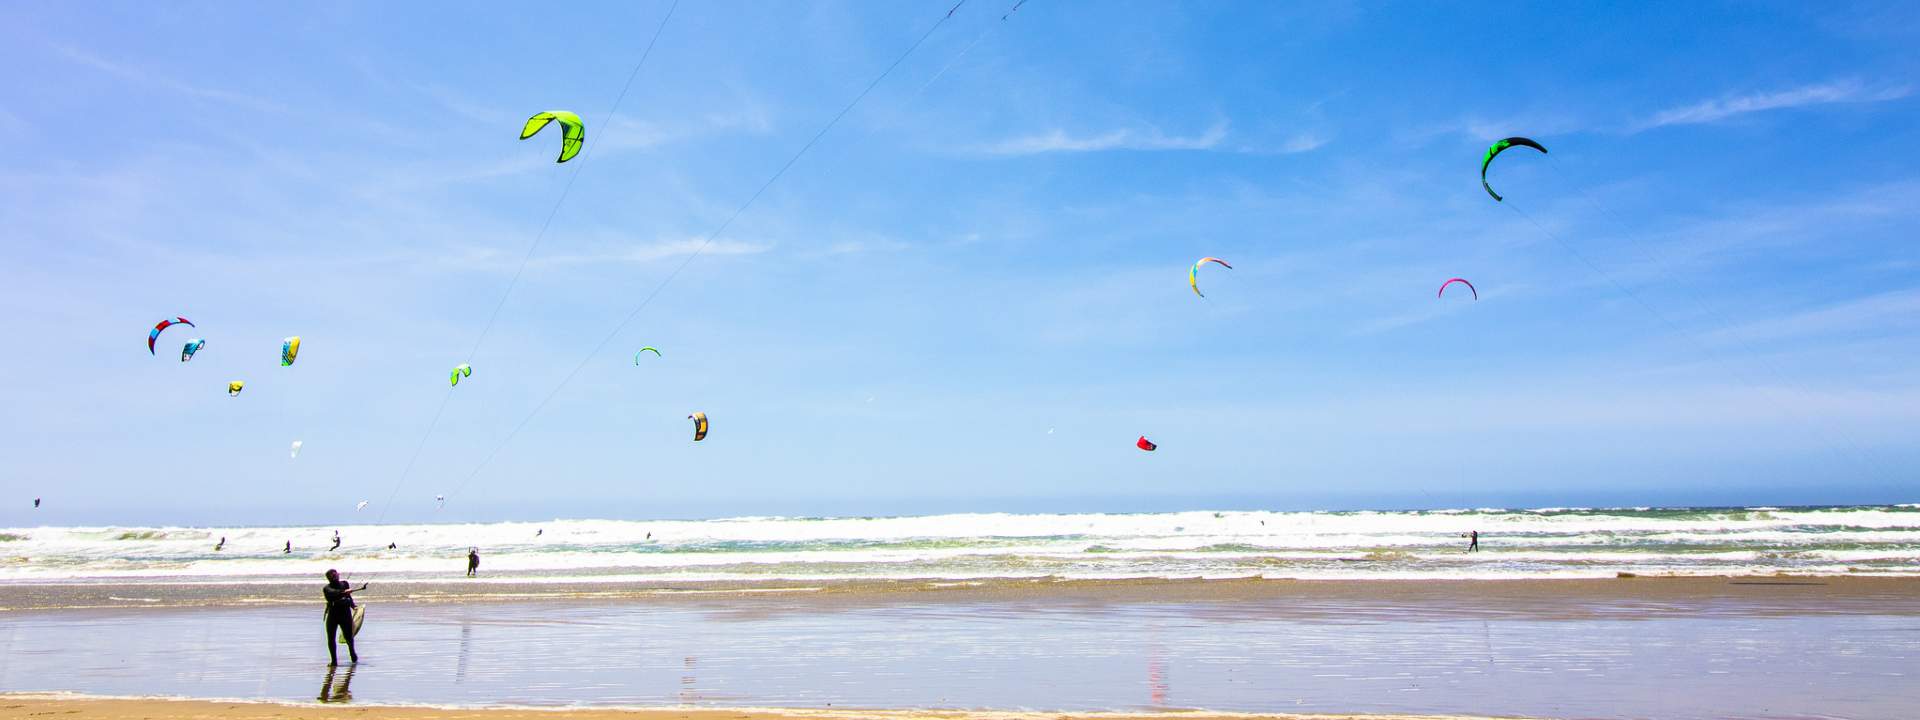 À l'assaut des plus beaux spots de kitesurf au sri lanka